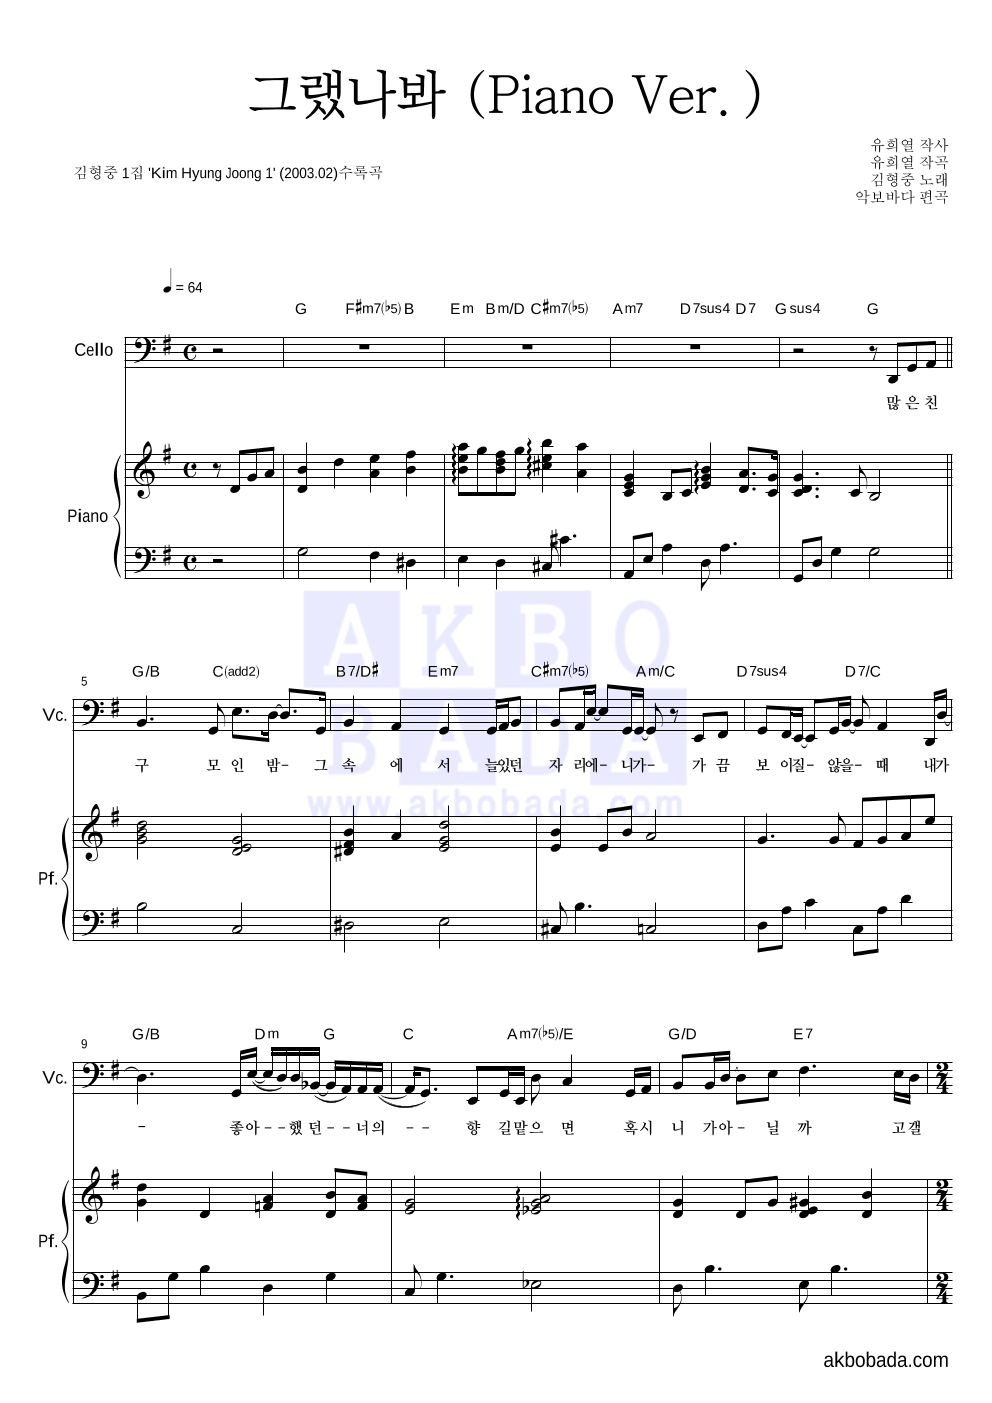 김형중 - 그랬나봐 (Piano Ver.) 첼로&피아노 악보 